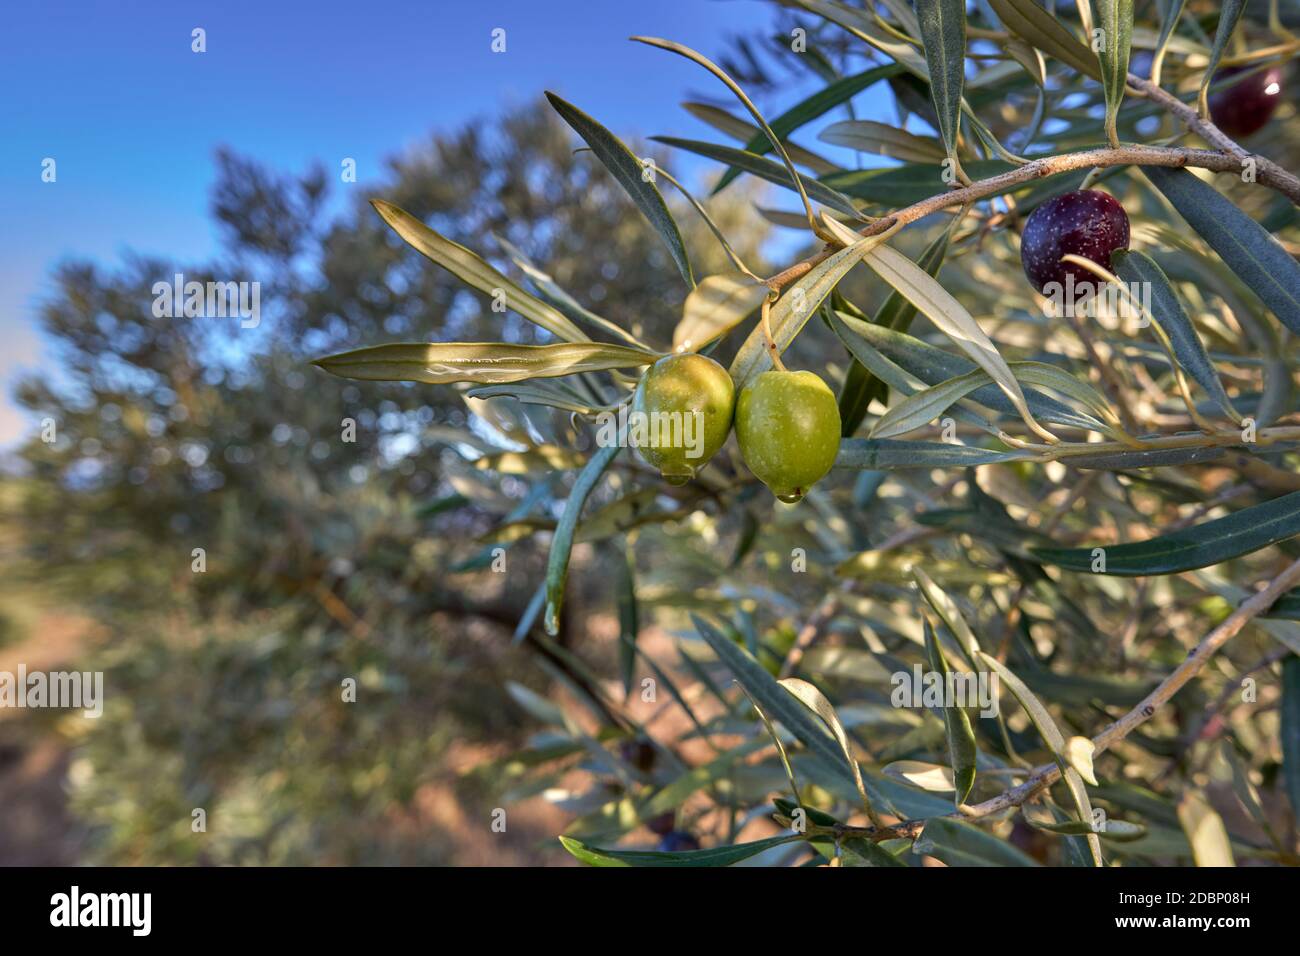 Oliven hängen im Olivenbaum und werden vom Morgentau in Antequera, Malaga, nass. Andalusien, Spanien Stockfoto